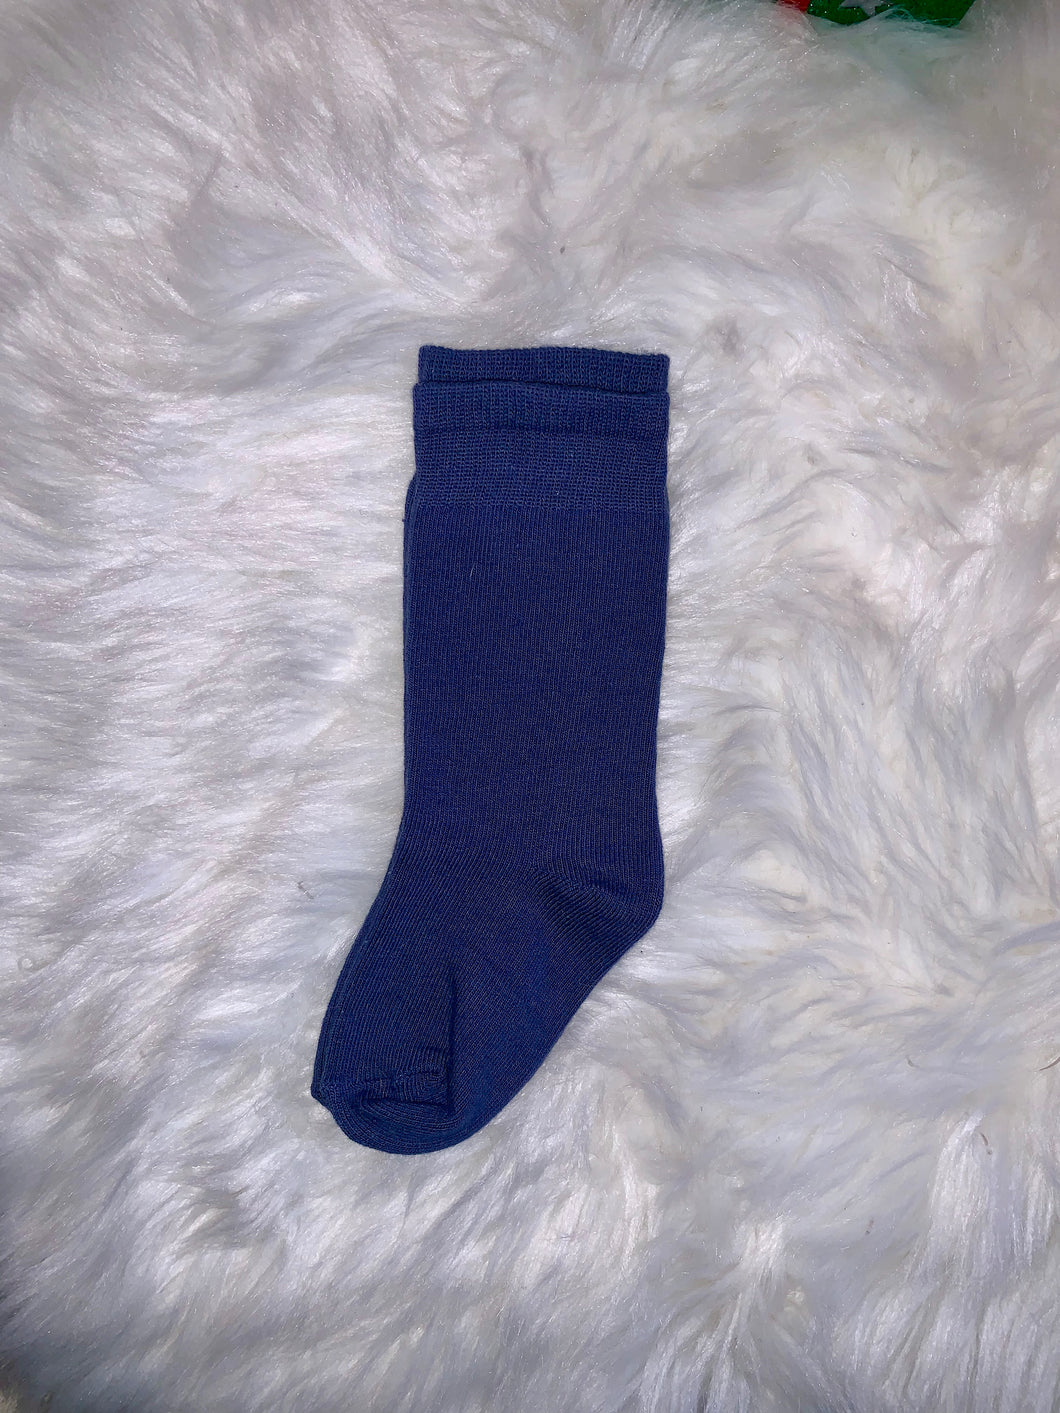 Knee Blue Socks